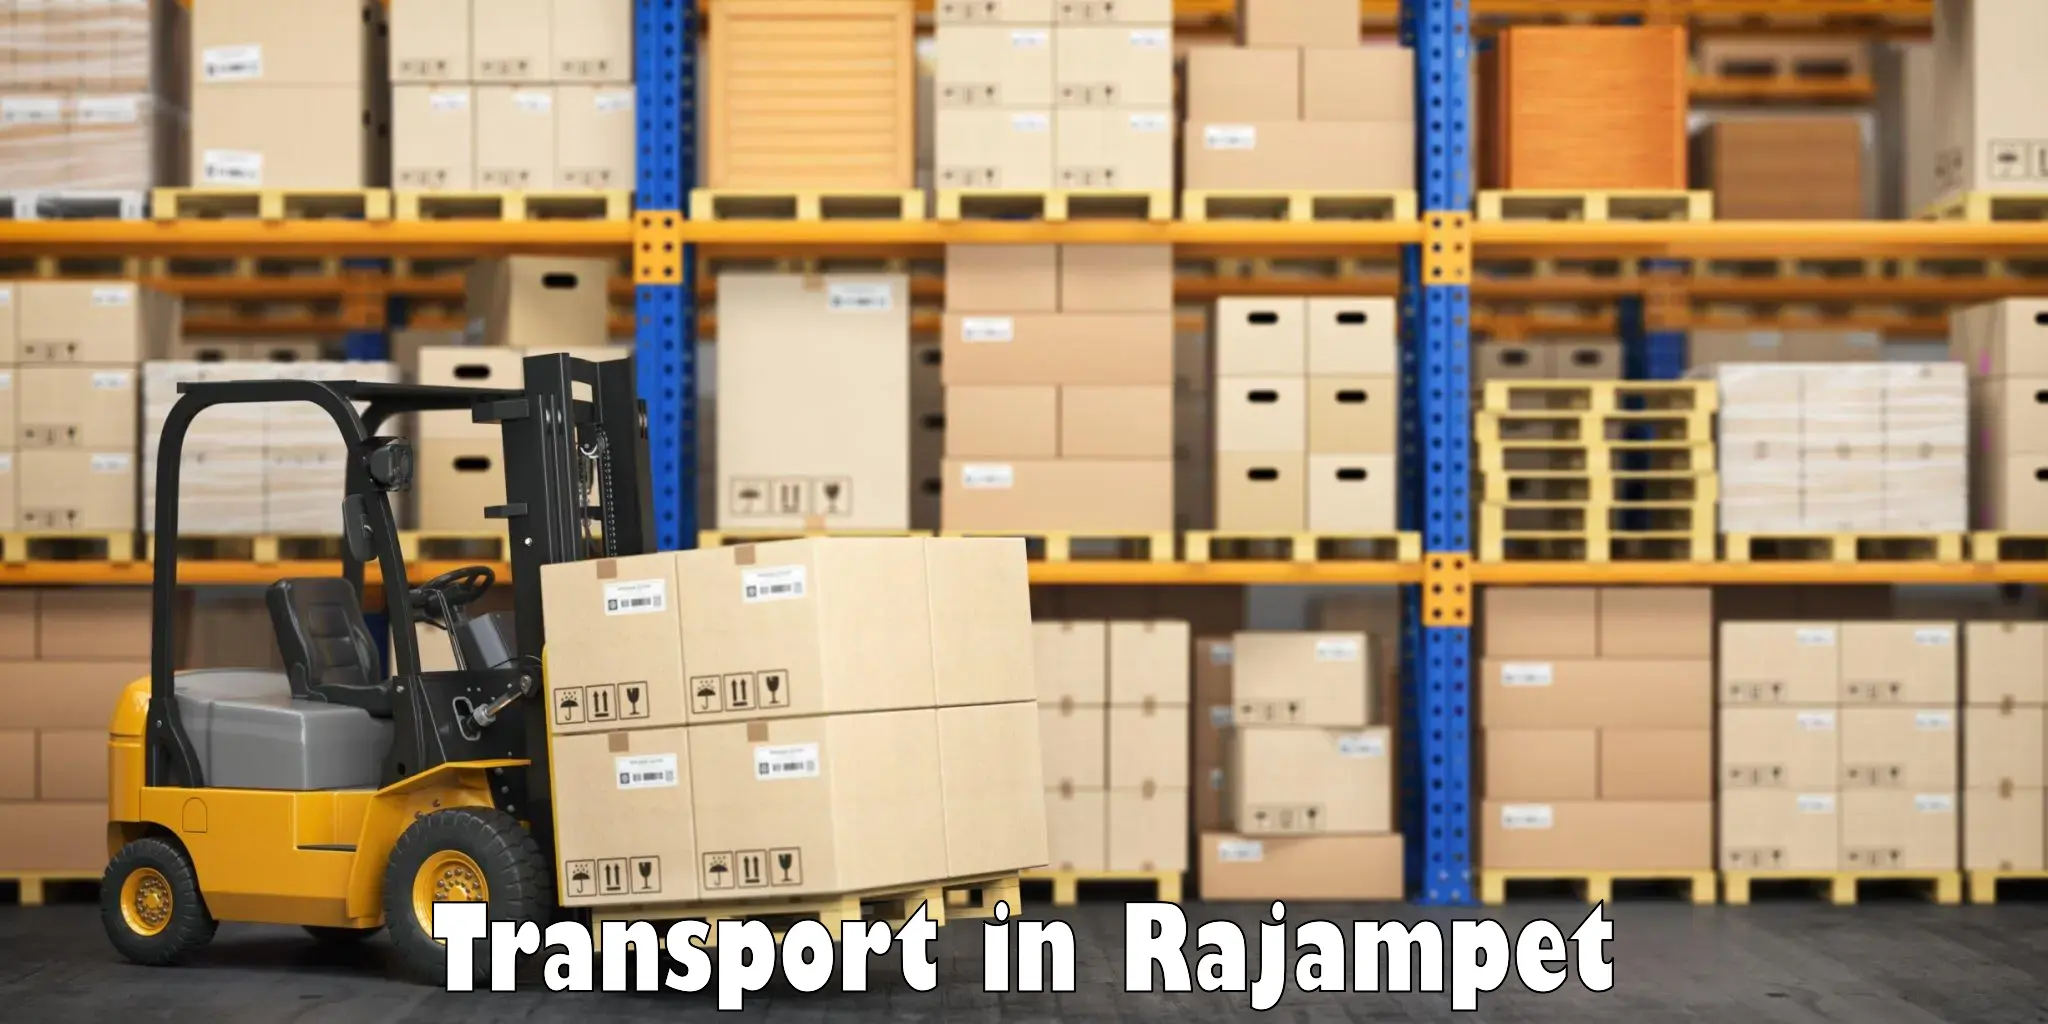 Online transport in Rajampet